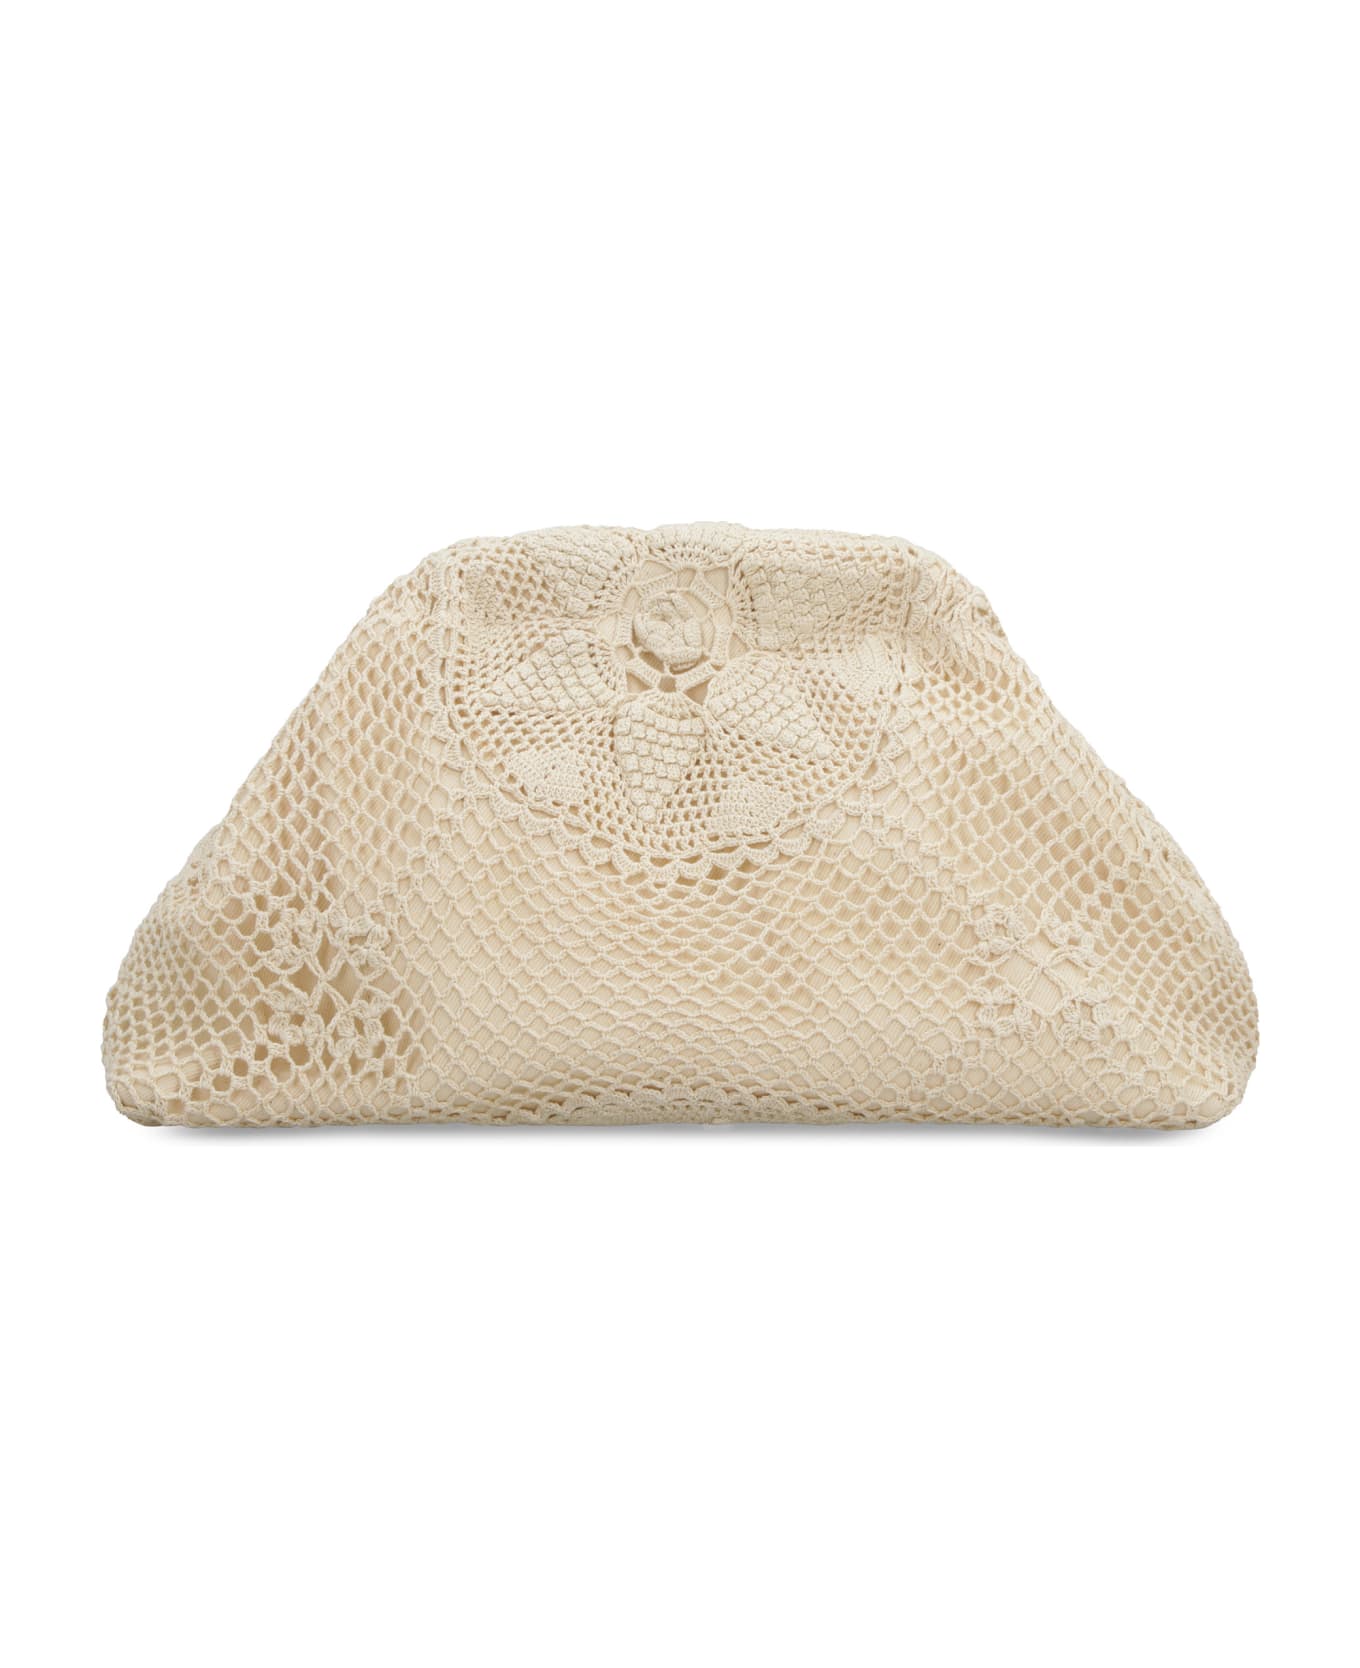 LaMilanesa Taormina Crochet Bag - Ecru クラッチバッグ